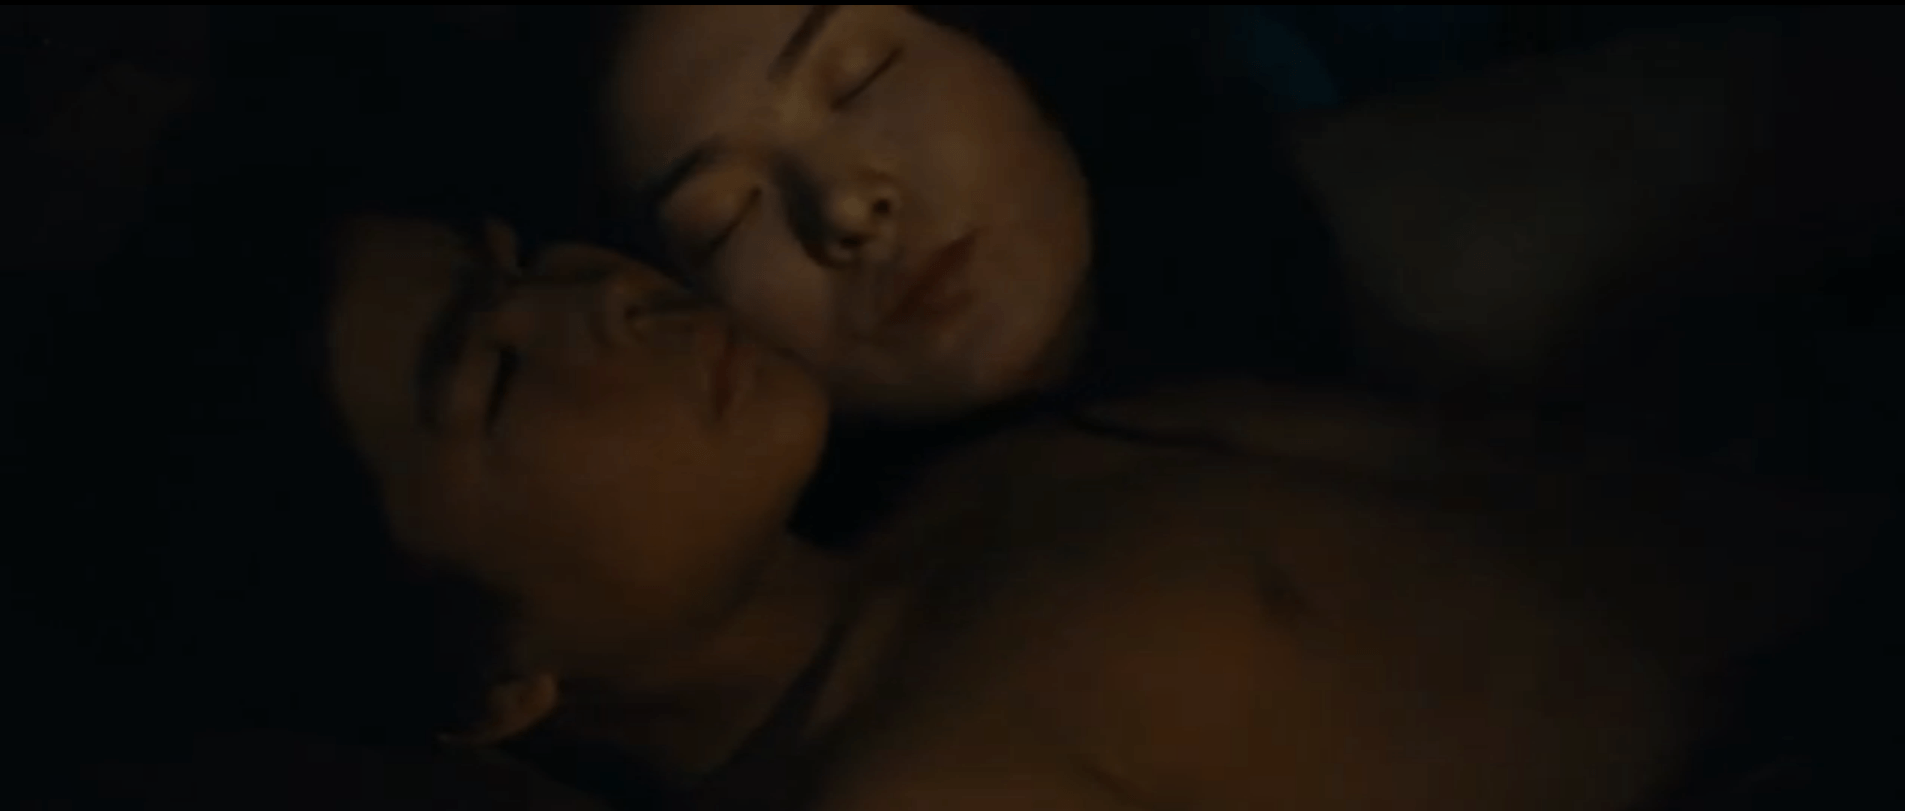 Казак Секс Кино Ххх Порно Порно Видео